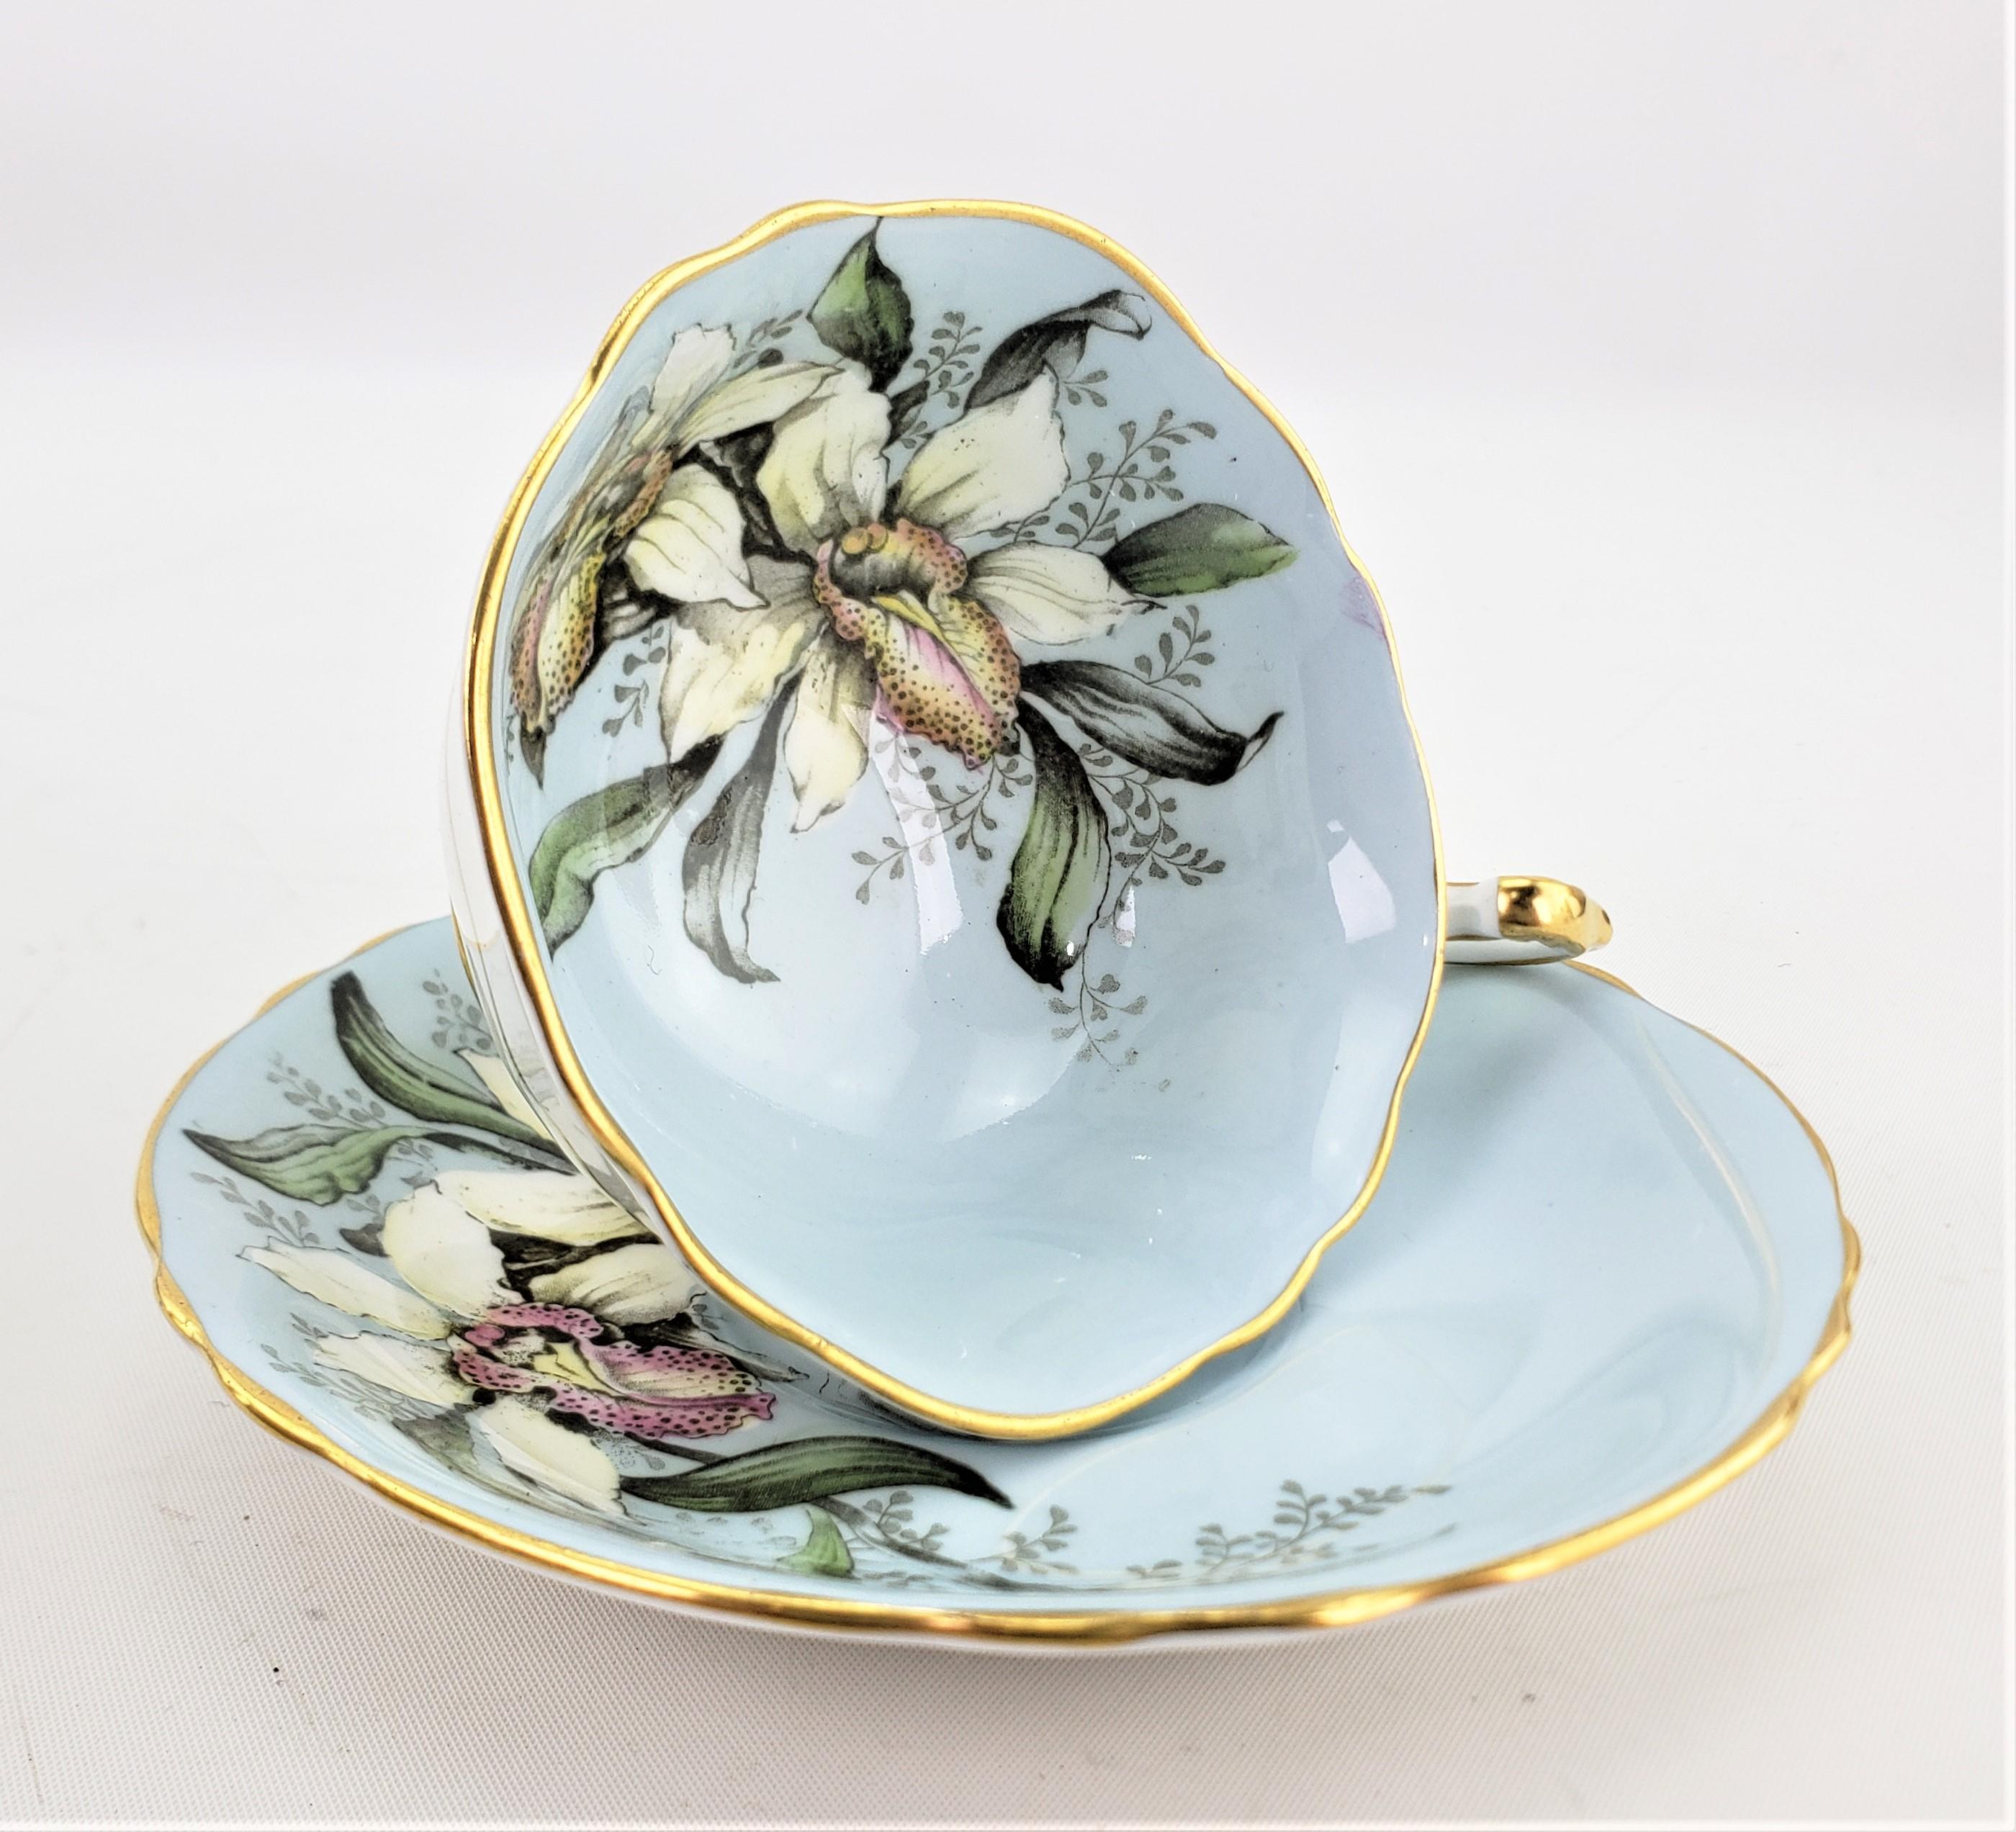 Ce service de tasses à thé et de soucoupes a été fabriqué par la célèbre fabrique anglaise de porcelaine fine Paragon vers 1960. L'ensemble est réalisé sur un fond bleu robinier avec un grand motif fleuri à l'intérieur de la tasse qui est reproduit